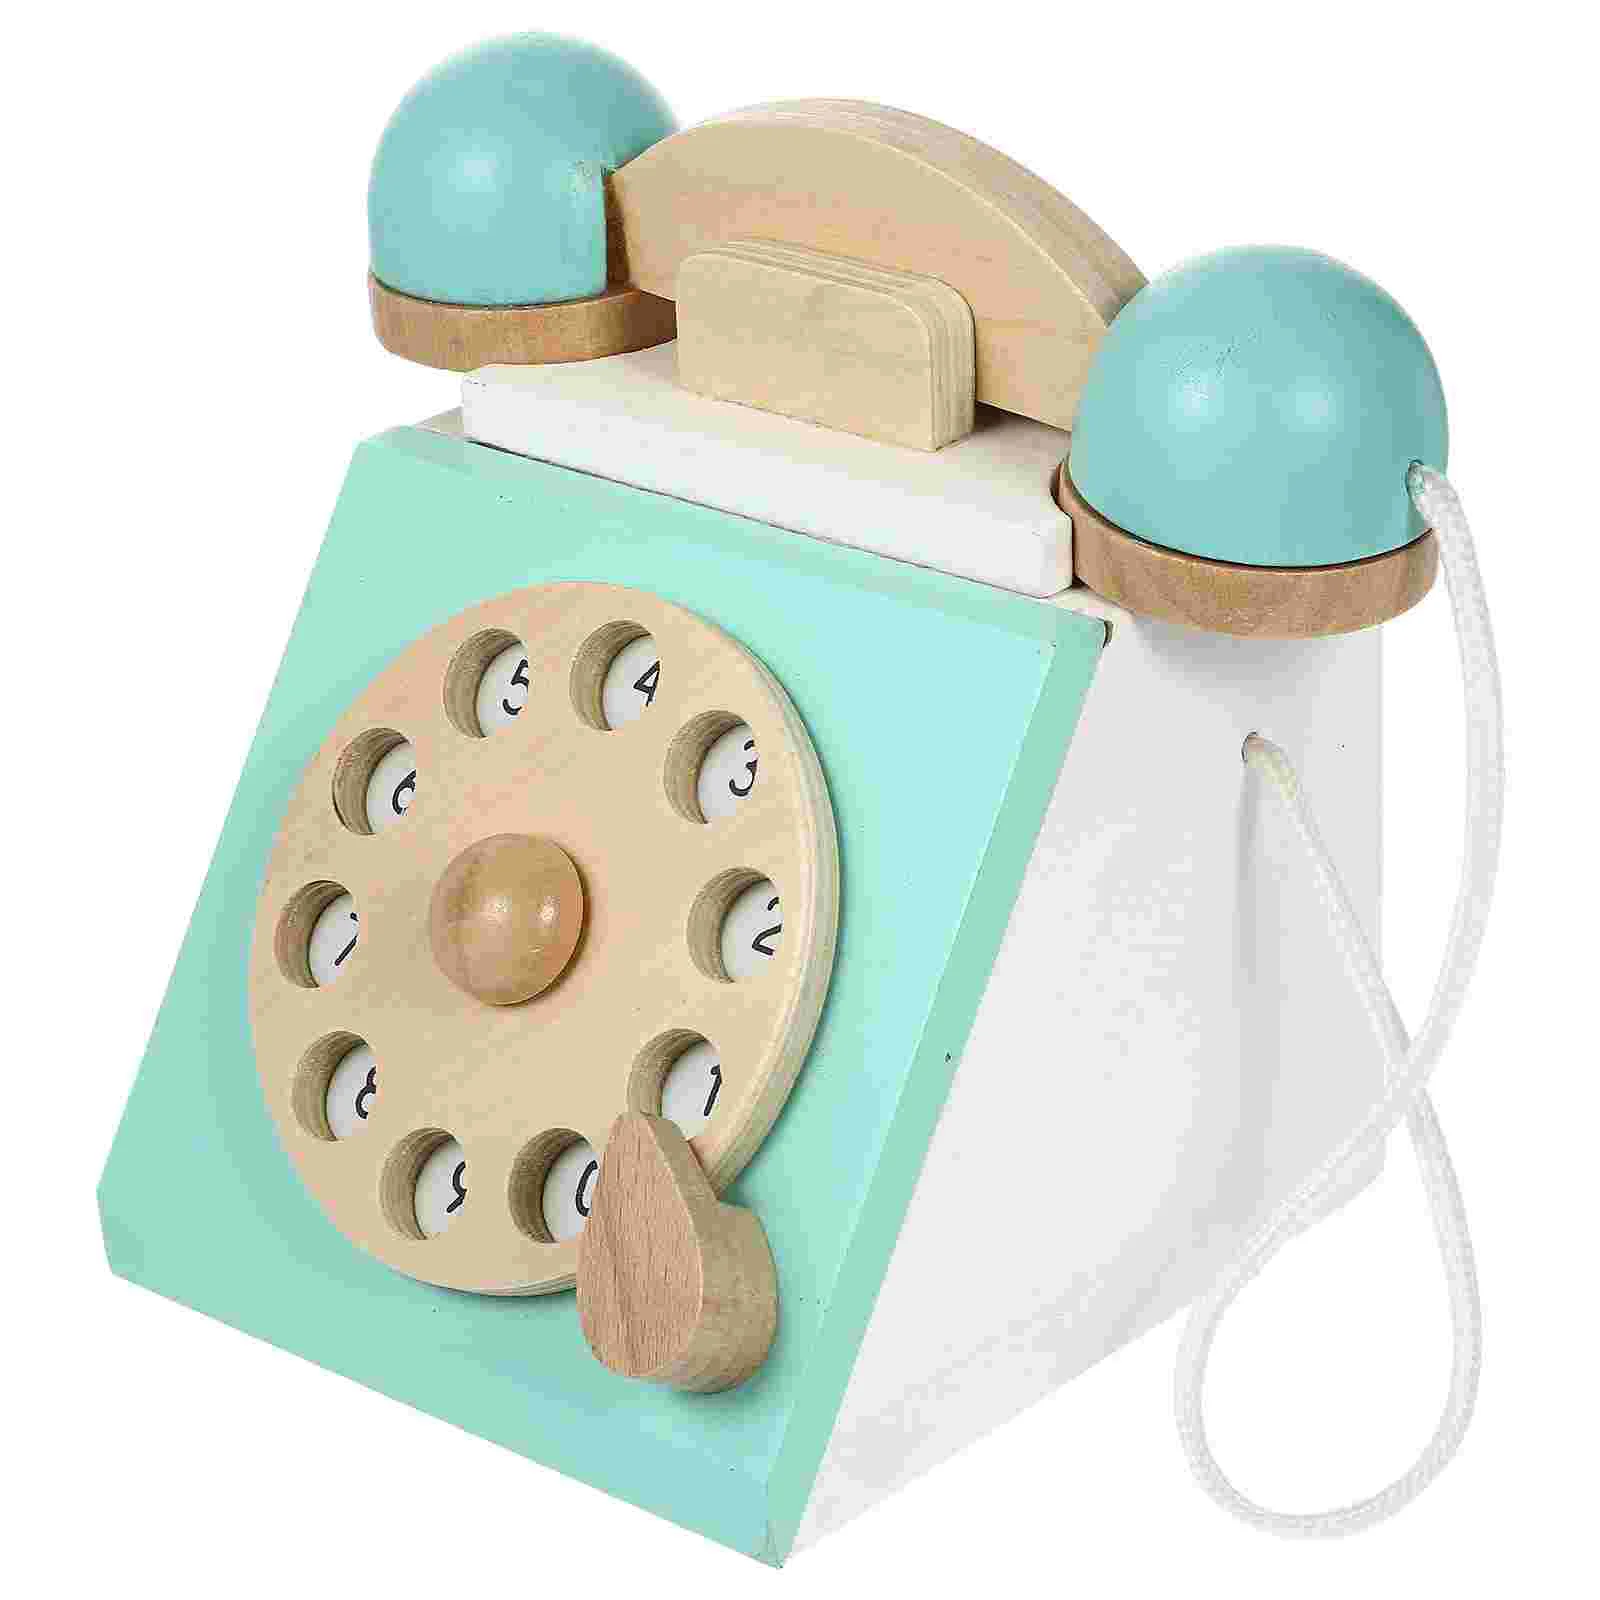 Telefono in legno del fumetto genitore-figlio arredamento Vintage bambini giocattoli educativi per ragazze per ragazze Cognitive